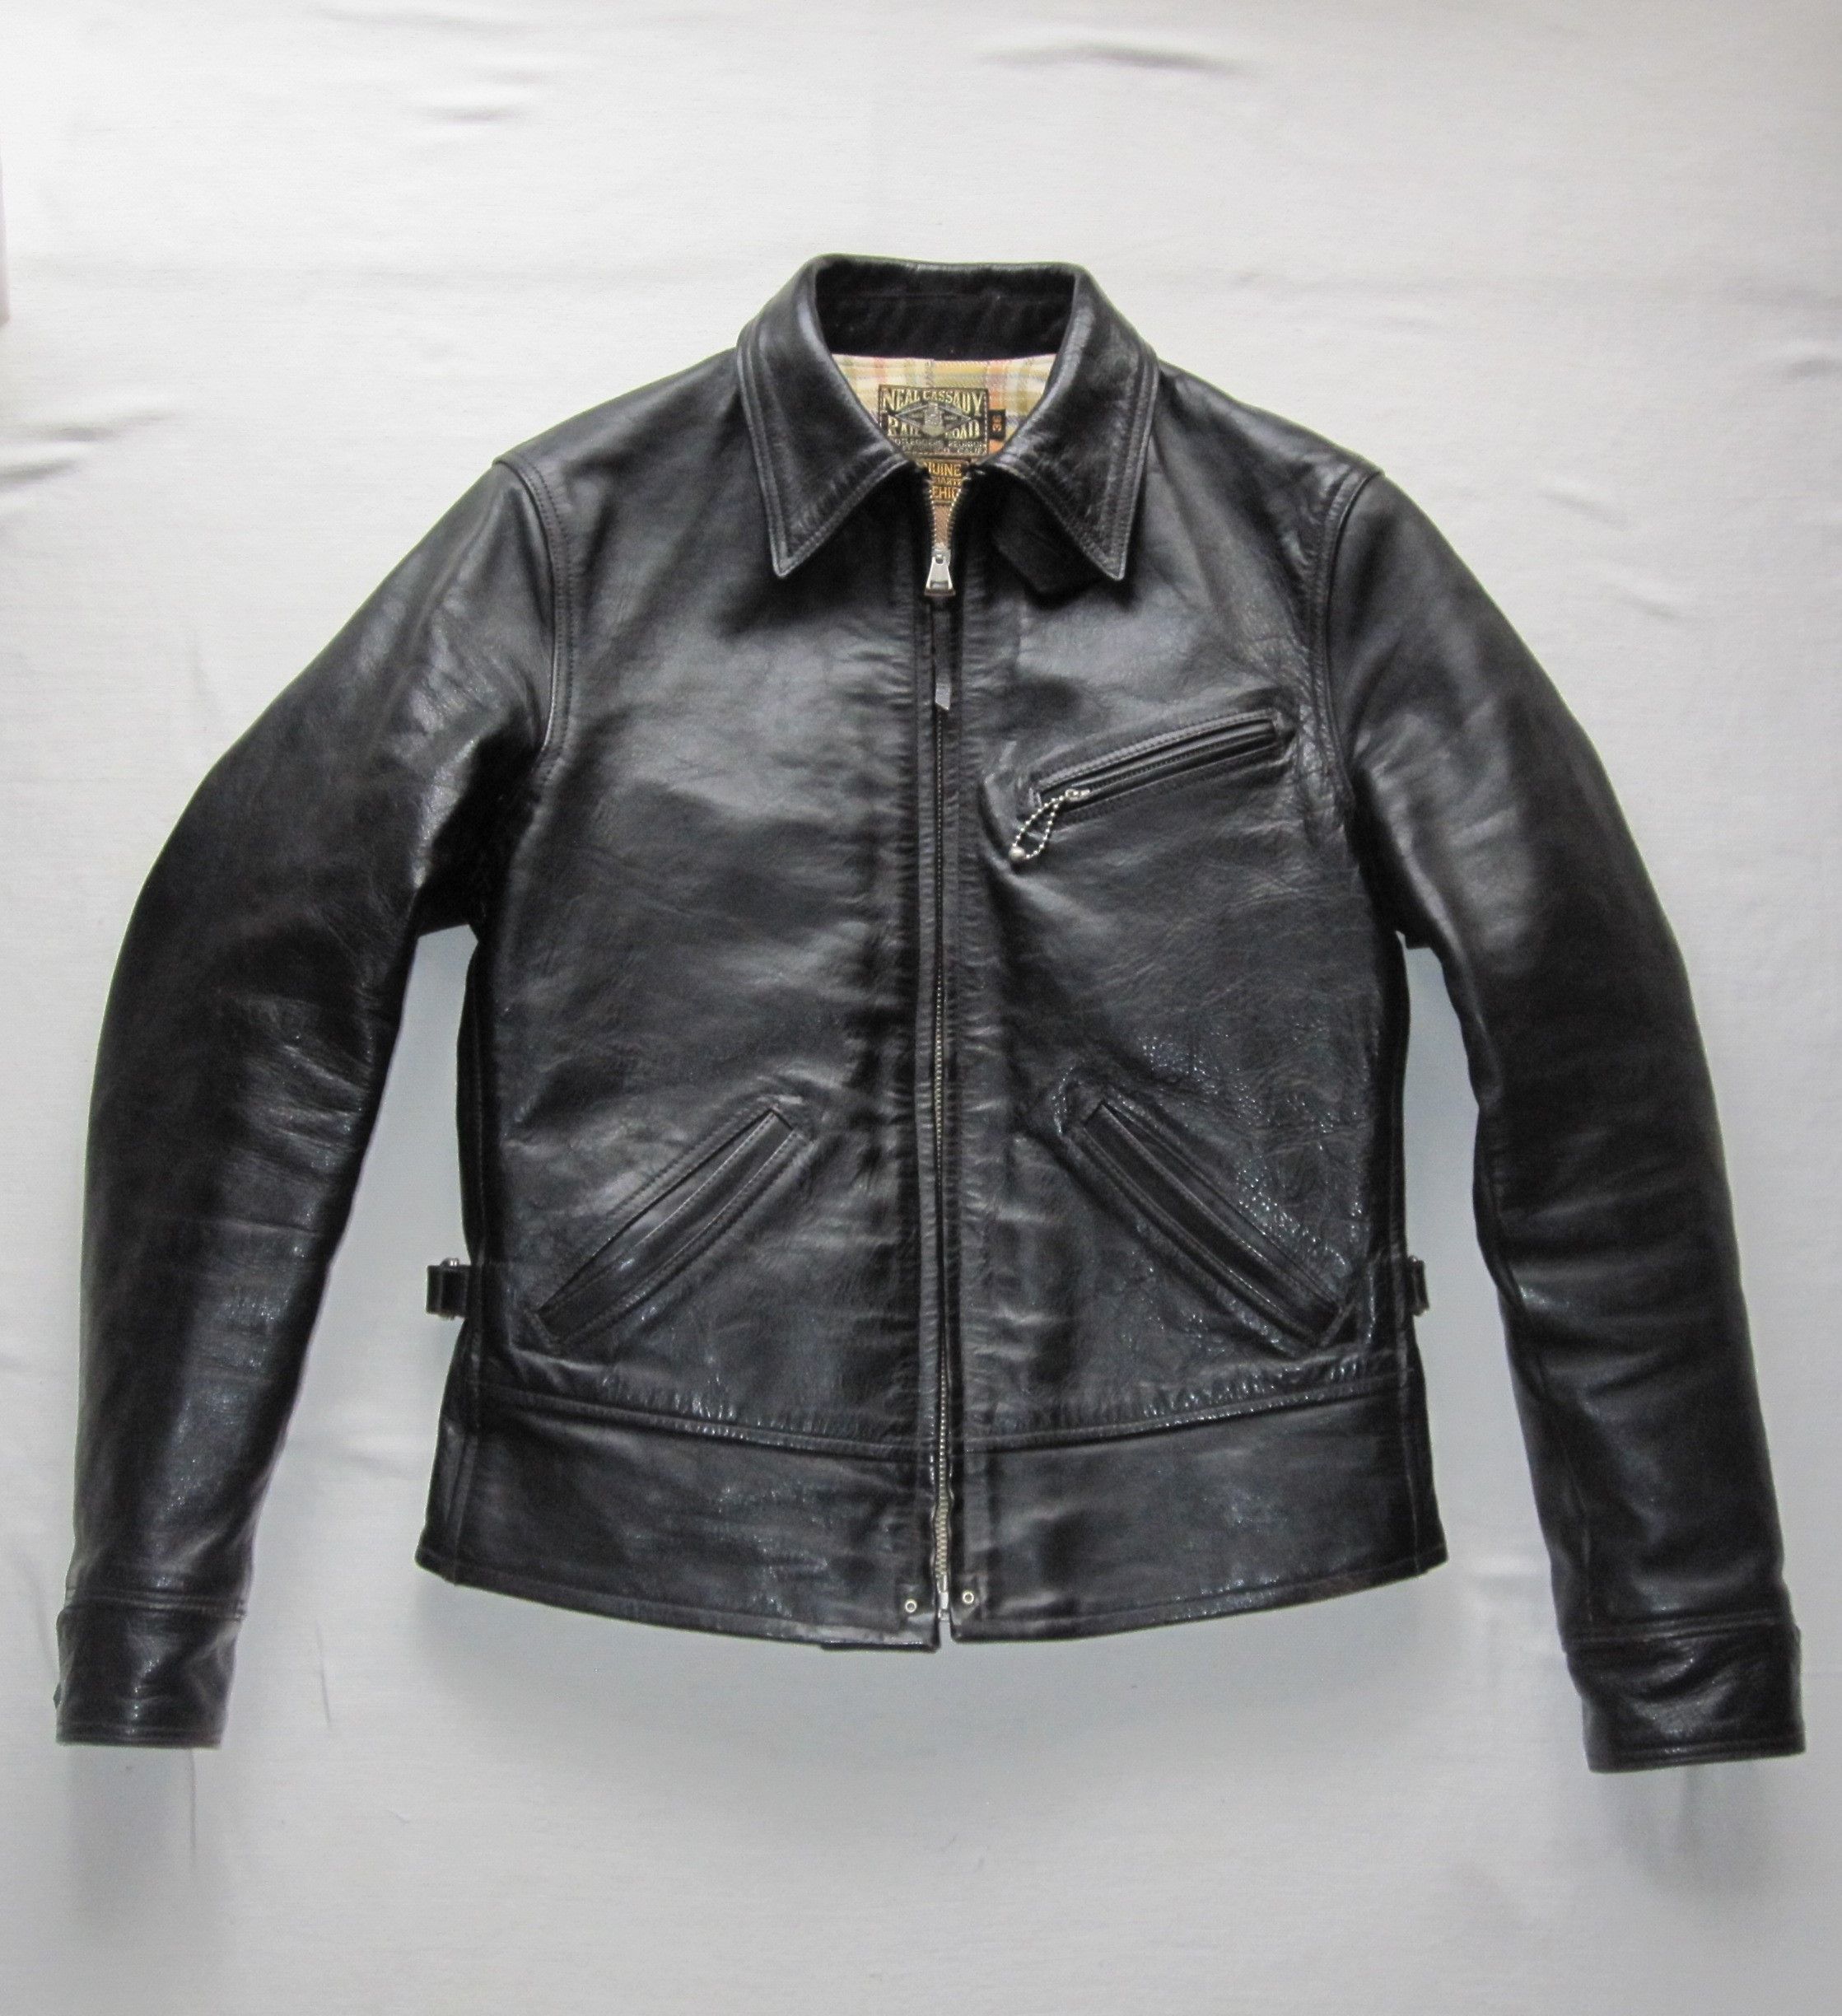 Freewheelers FREEWHEELERS CABOOSE Leather Jacket 36 | Grailed